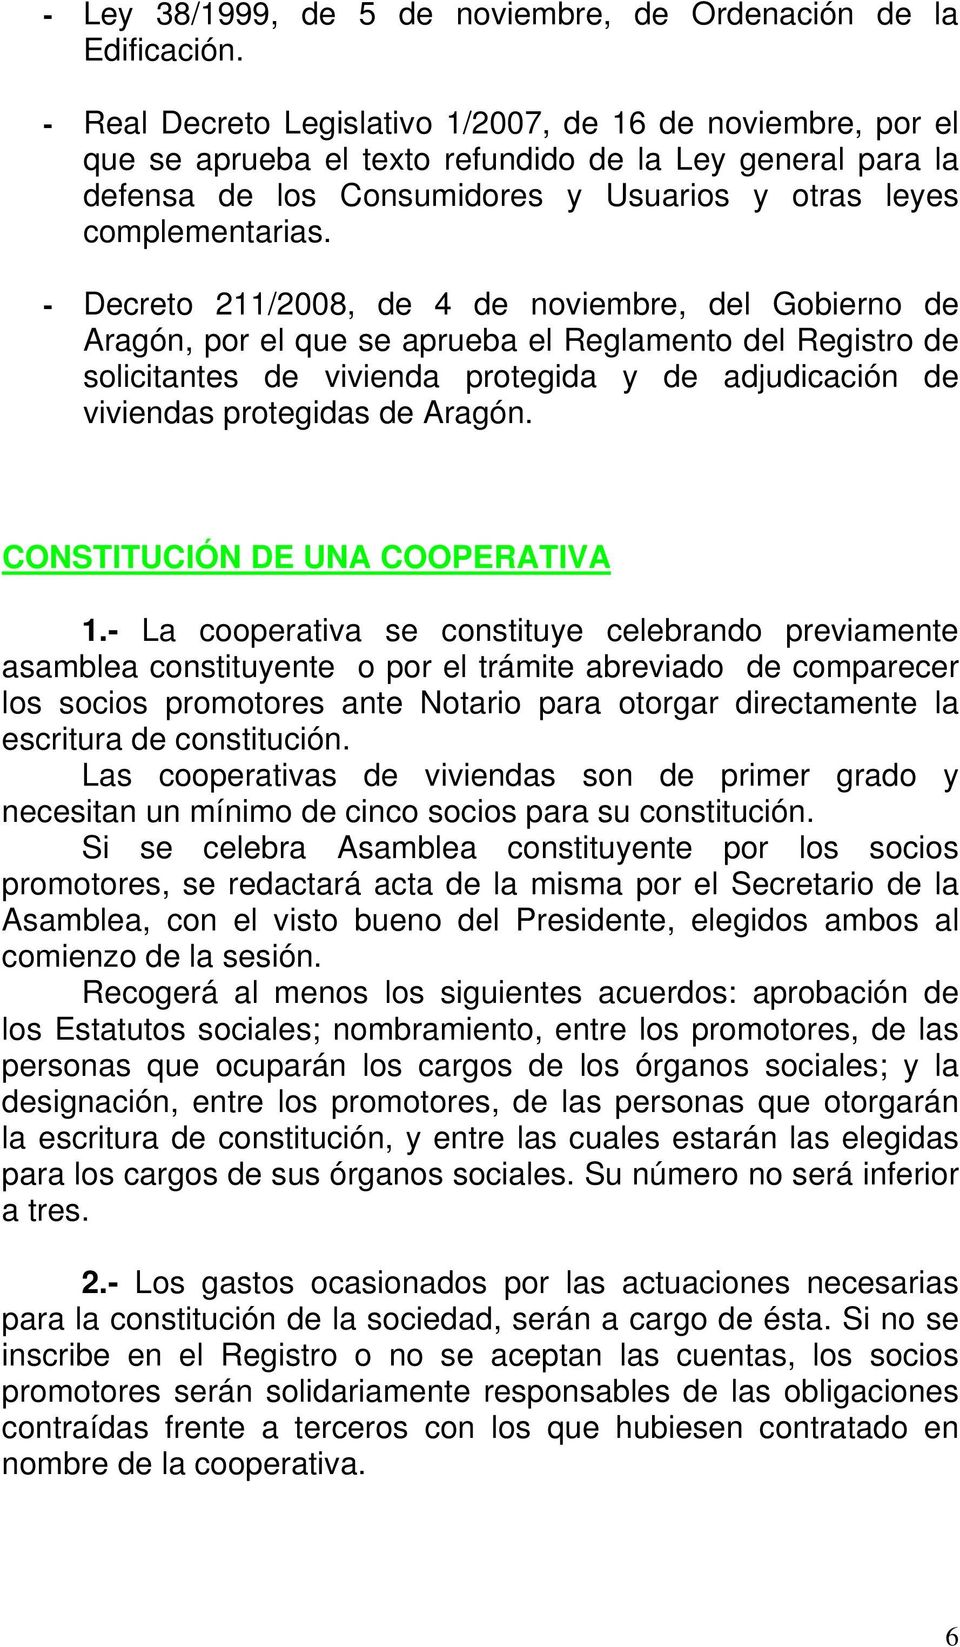 - Decreto 211/2008, de 4 de noviembre, del Gobierno de Aragón, por el que se aprueba el Reglamento del Registro de solicitantes de vivienda protegida y de adjudicación de viviendas protegidas de